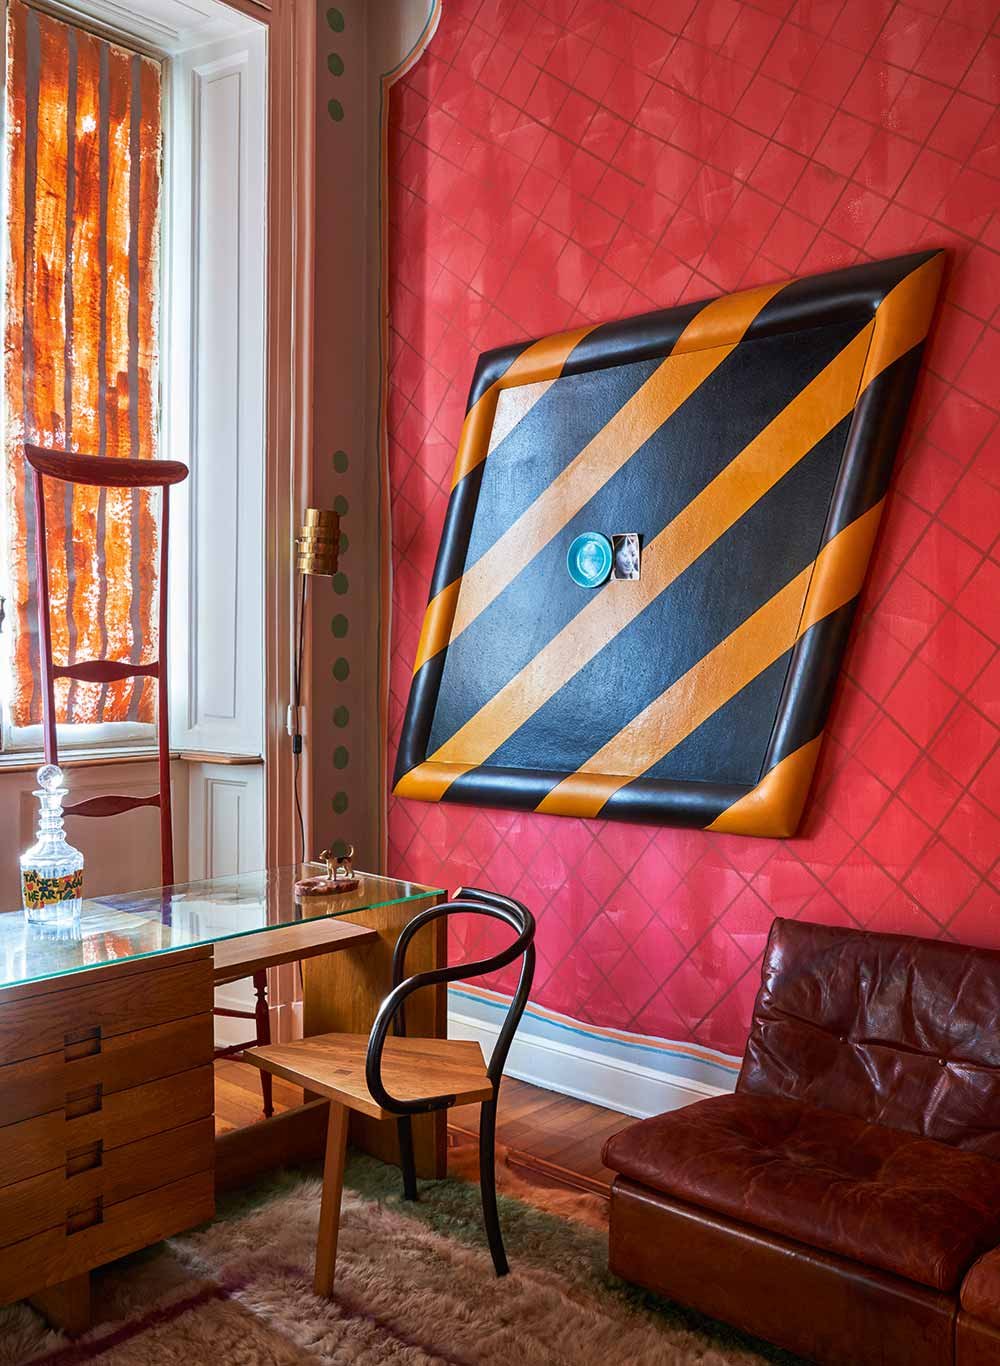 Arbeitsplatz Vor dem Schreibtisch von Gio Ponti steht ein origineller Sessel von Martino Gamper. An der roten Wand prangt eine gelb-schwarze Pinnwand von Nanda Vigo.